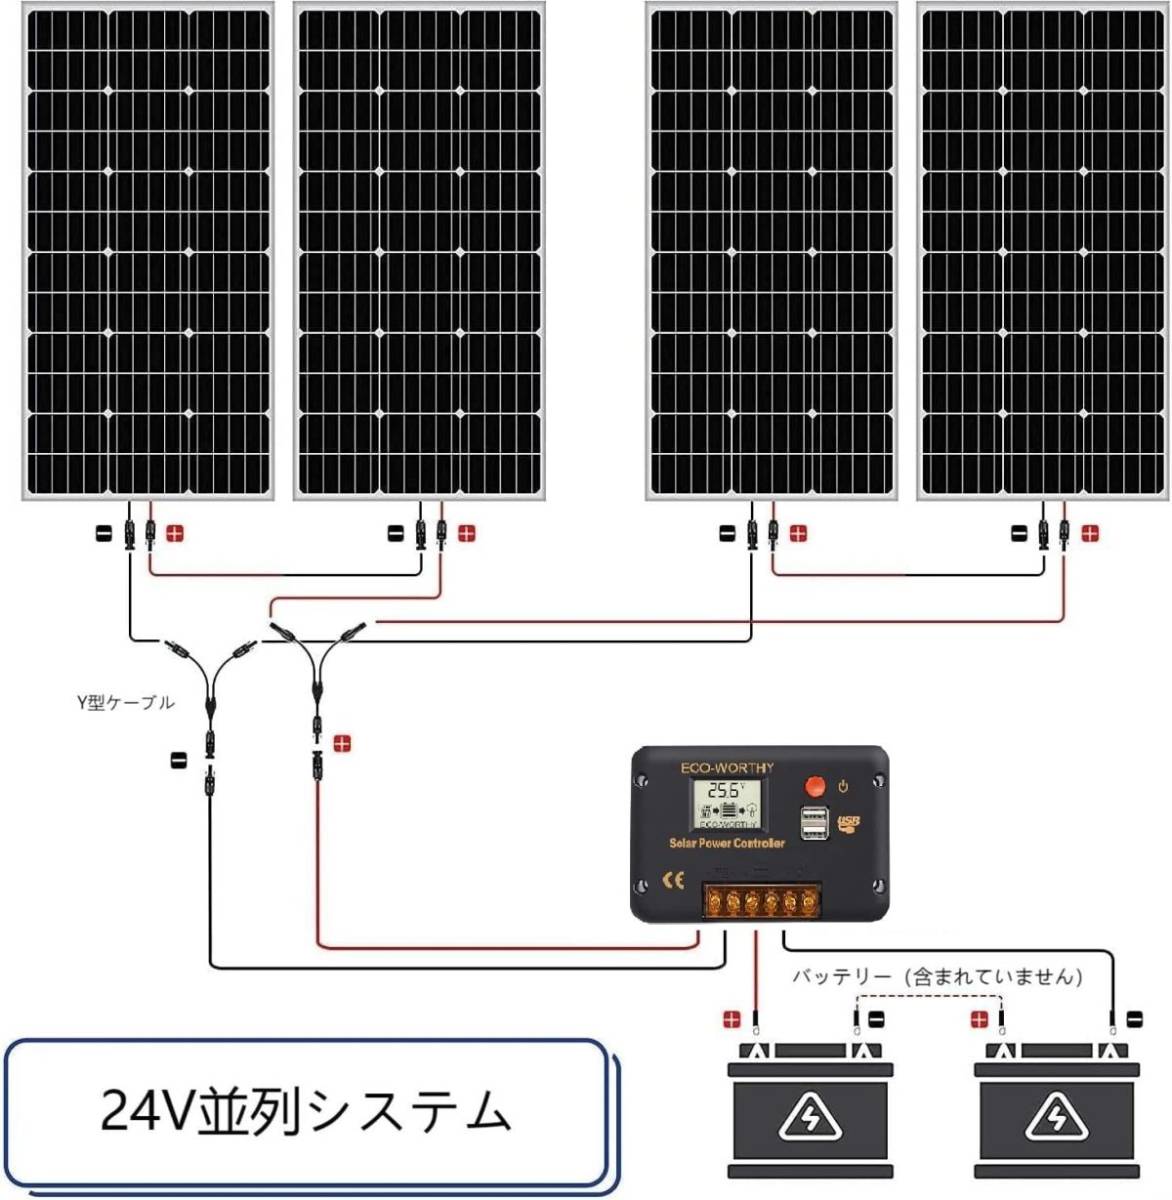 ECO-WORTHY 400W ソーラーパネル キット 太陽光発電 単結晶 30Aチャージコントローラー 太陽光チャージ ソーラーシステム_画像5